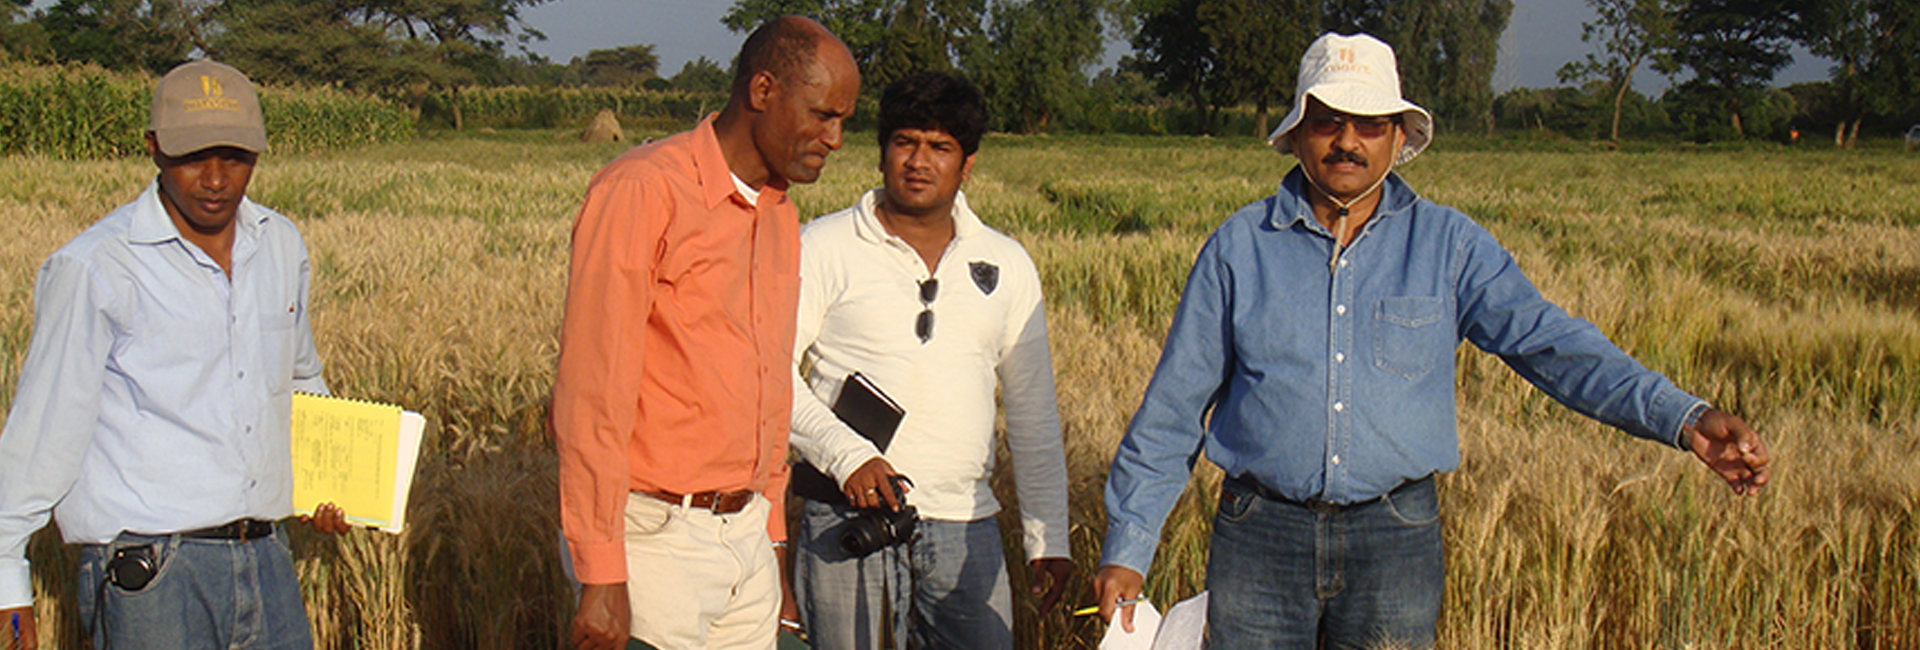 ผู้ชนะรางวัล Pravasi Bharatiya Samman นักวิทยาศาสตร์ Dr. Ravi Singh กำลังทำงานเพื่อความมั่นคงทางอาหารสำหรับทุกคน